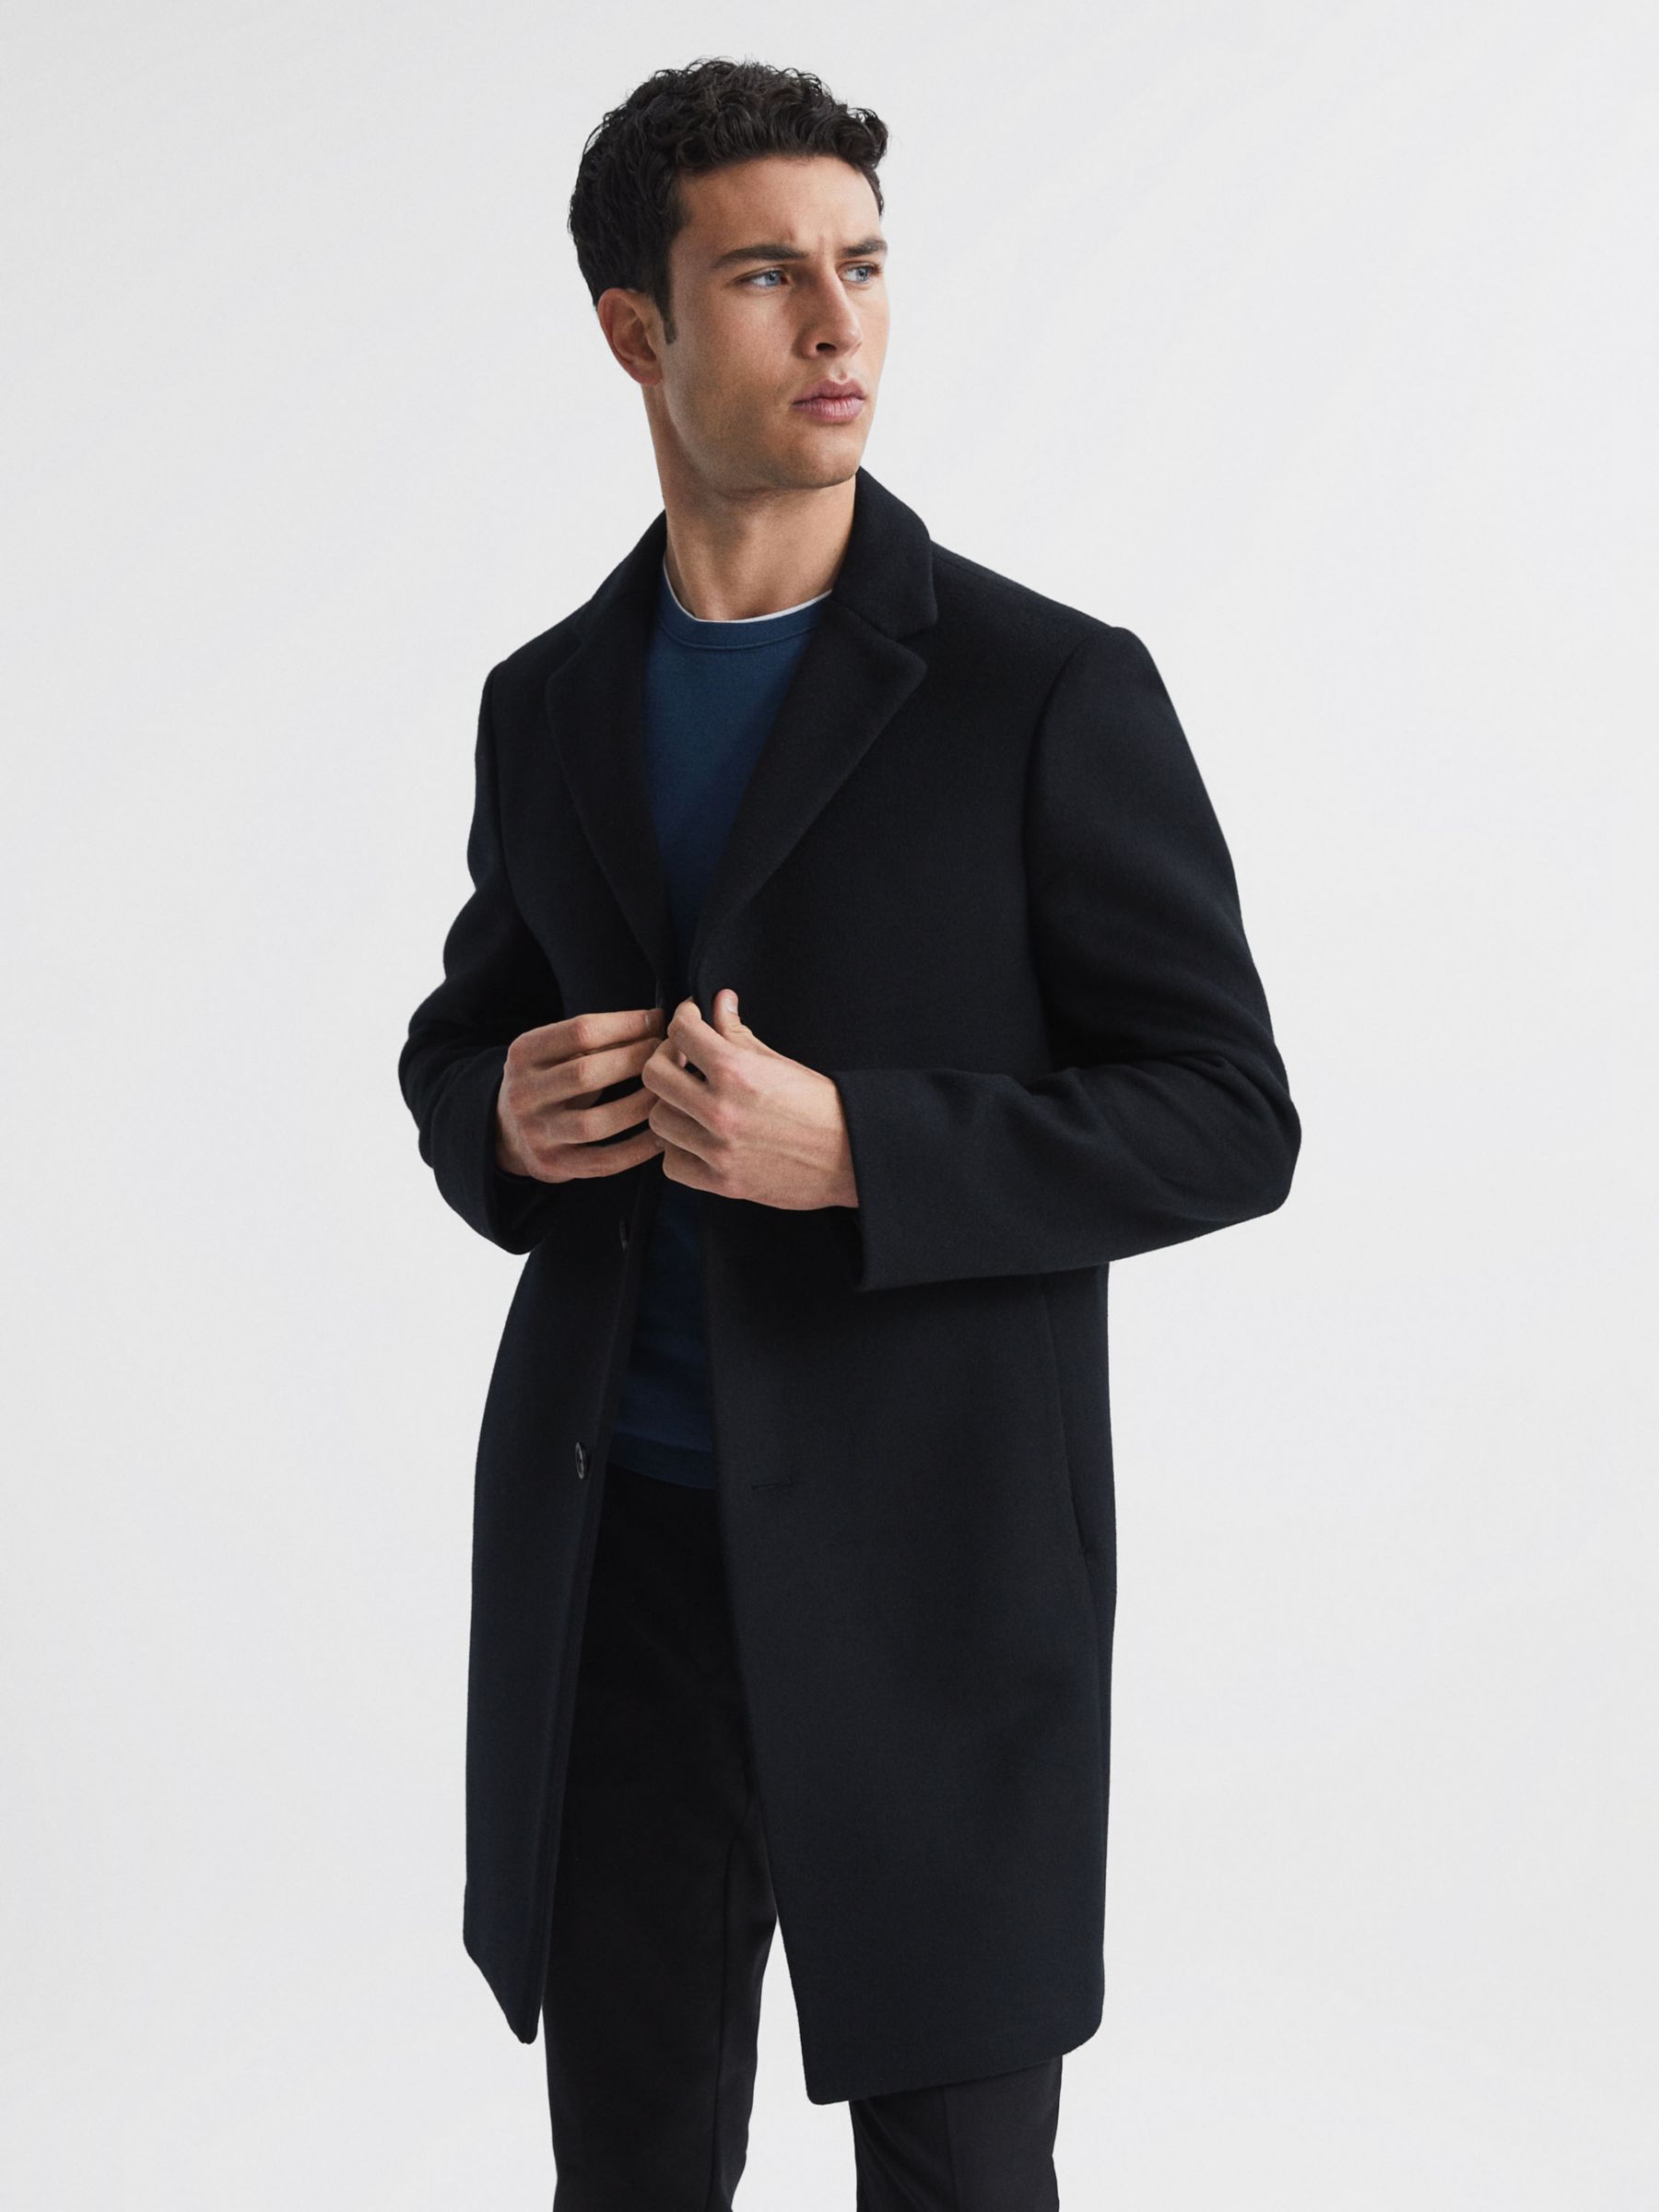 Buy Reiss Gable Wool Epsom Overcoat Online at johnlewis.com